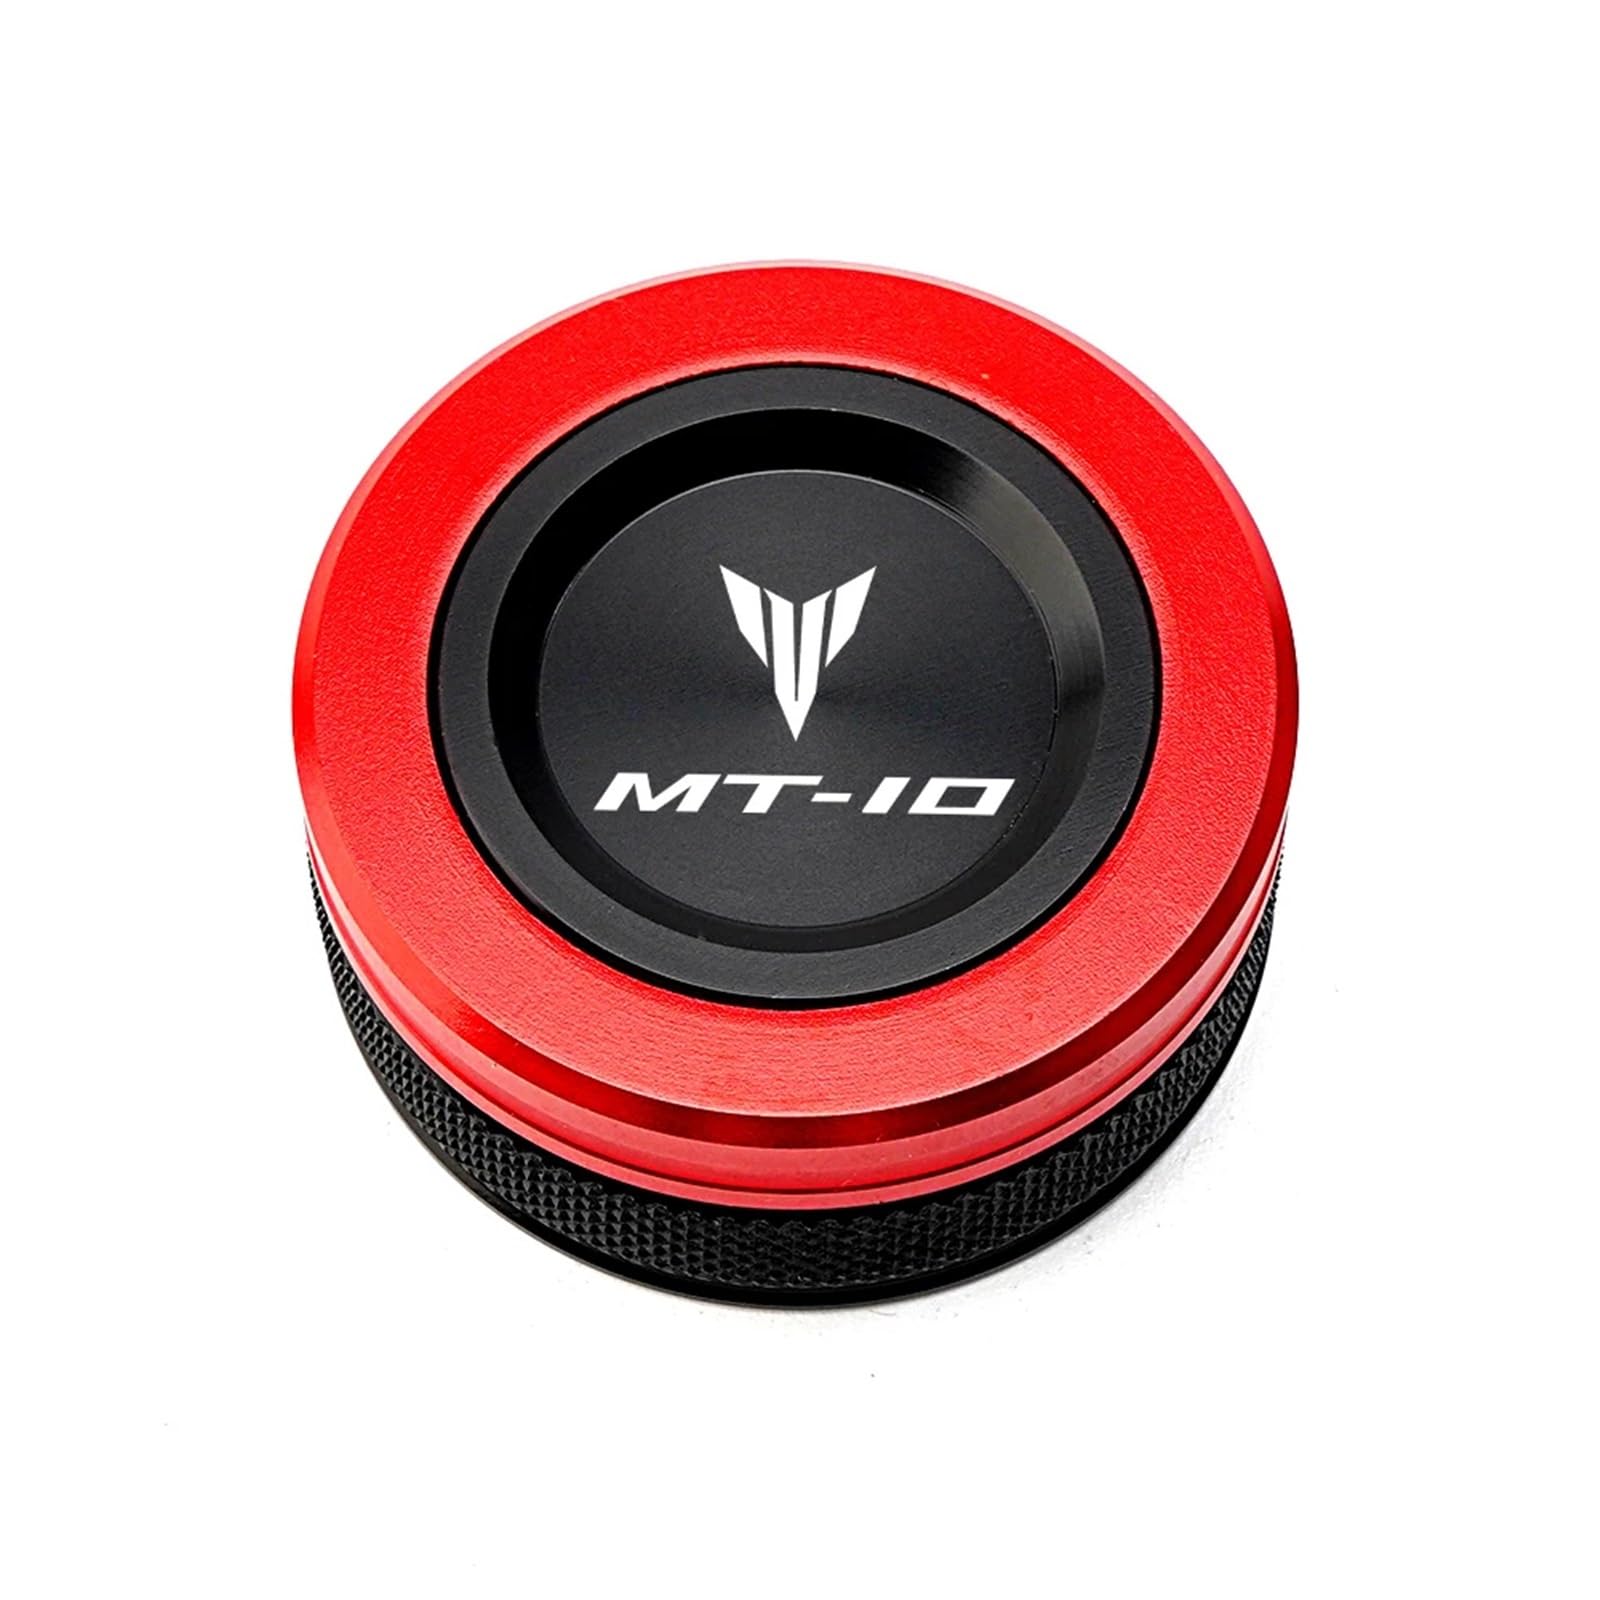 LOTFI Passend for Yamaha MT03 MT07 MT10 MT09 Tracer MT 03 07 09 10 FZ07 FZ09 Motorradzubehör CNC Hinterradbremsflüssigkeitsbehälter-Abdeckkappe (Size : Red-MT10) von LOTFI